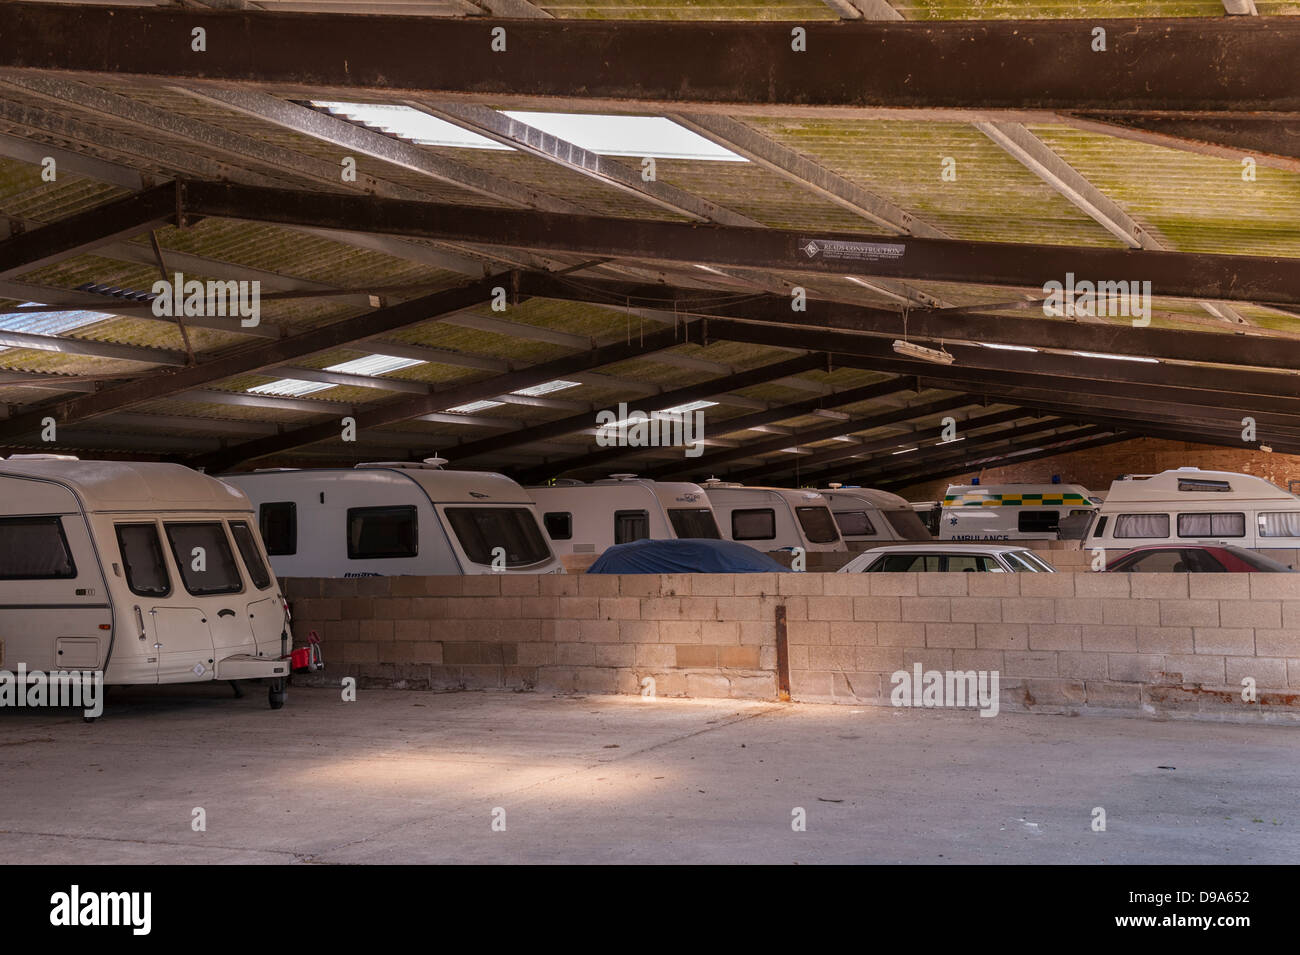 Eine Lagerhalle, wo Leute zahlen, um ihre Wohnwagen und Autos etc. speichern in Suffolk, England, Großbritannien, Vereinigtes Königreich Stockfoto